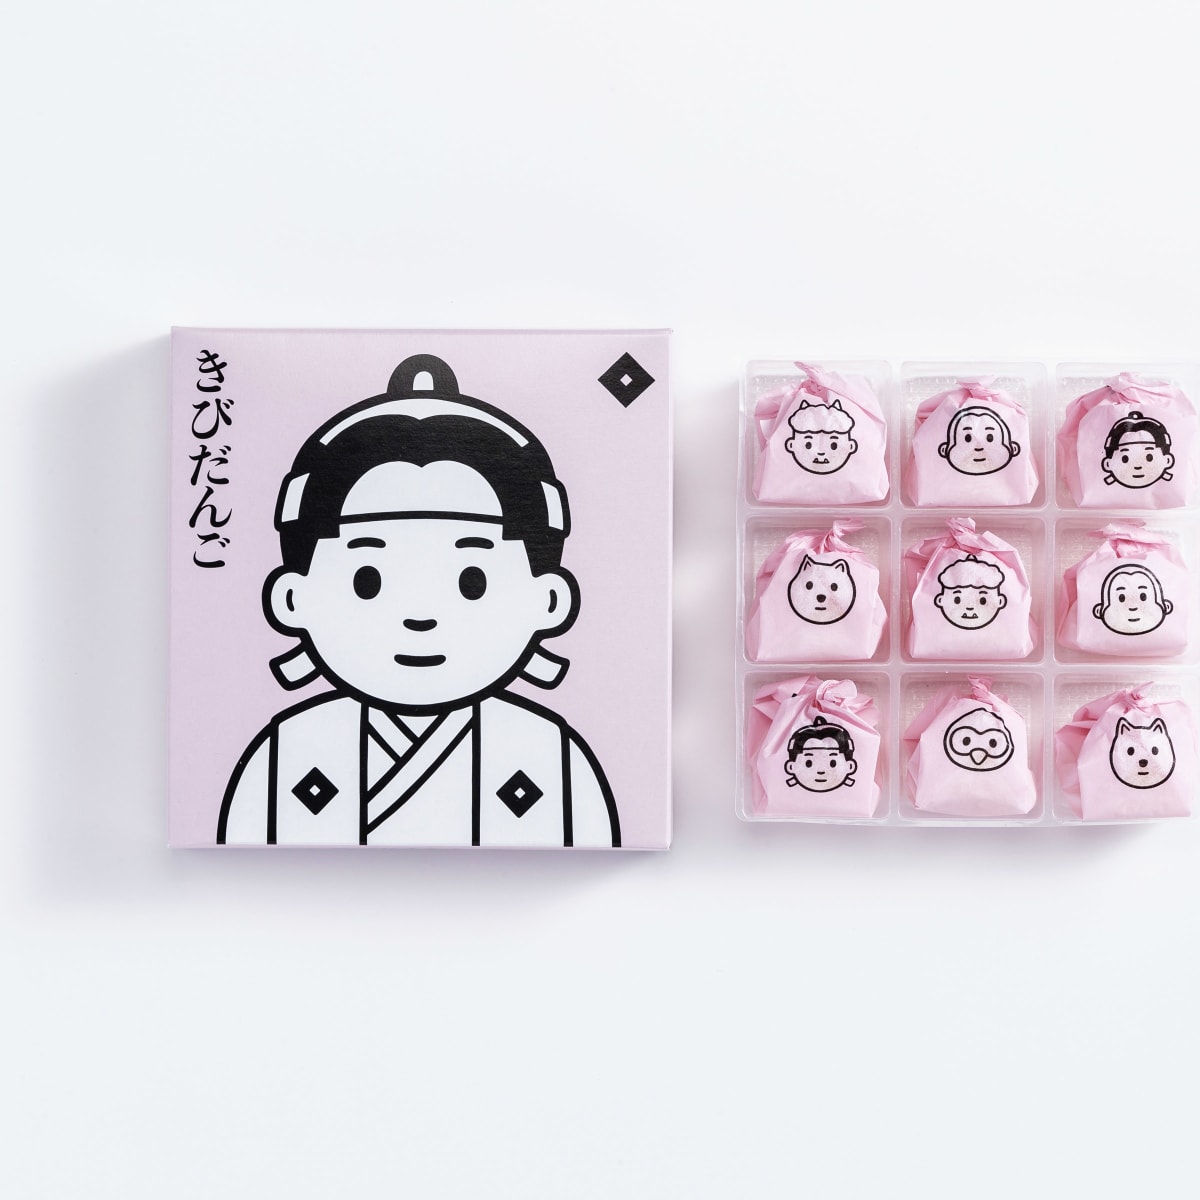 Noritakeが岡山の老舗きびだんごメーカーのパッケージを刷新 桃太郎や鬼のイラストをデザイン